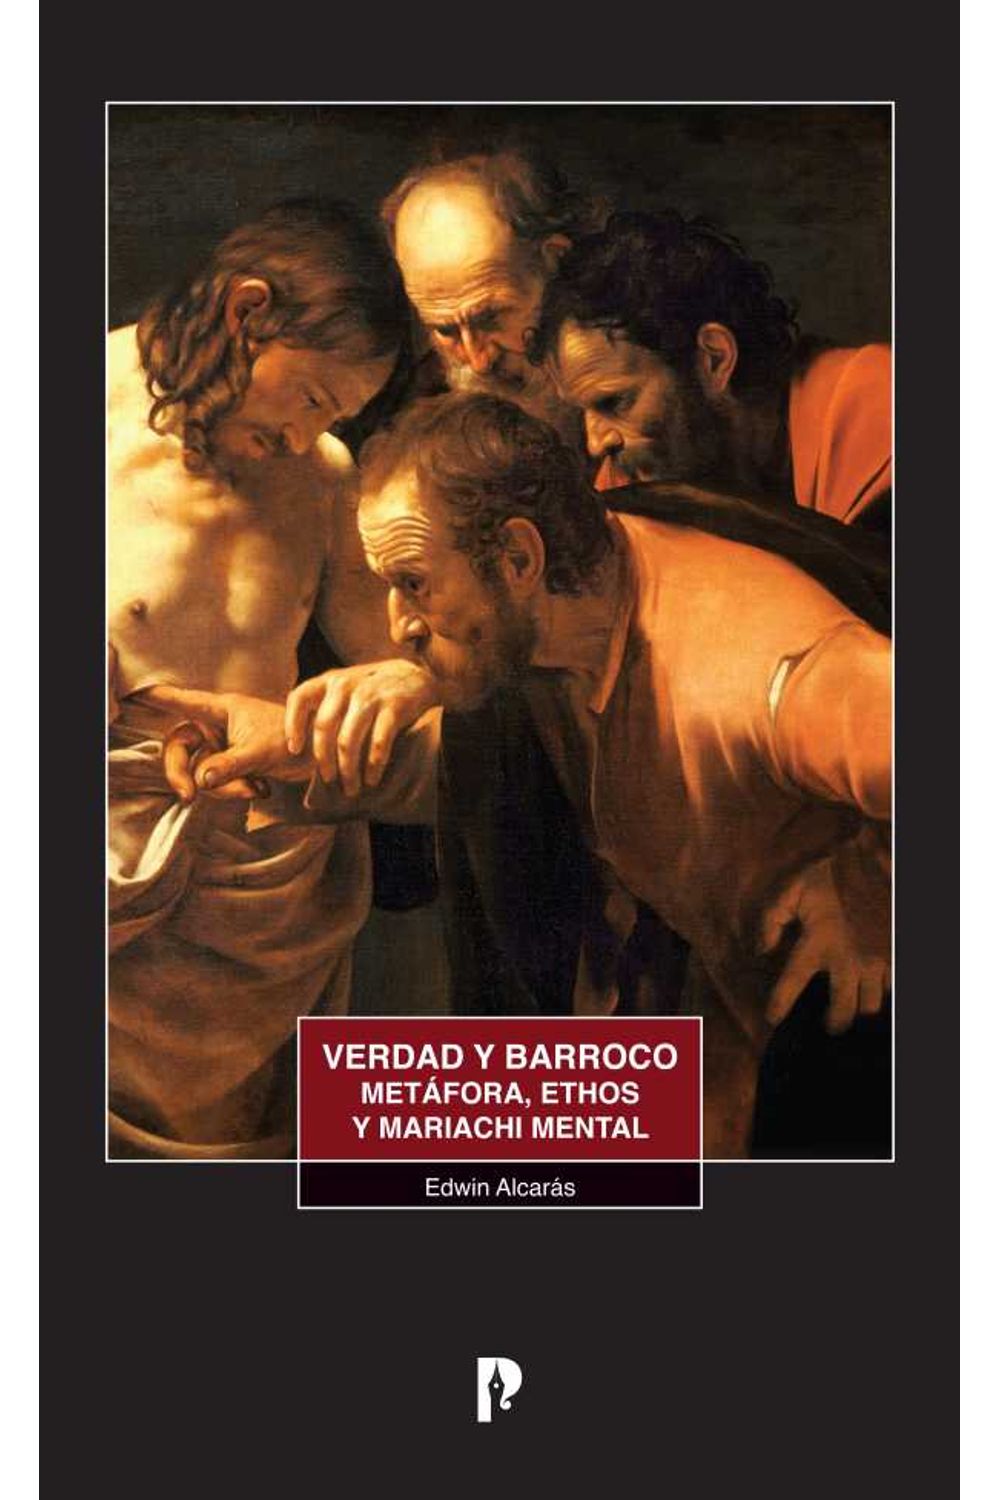 bw-verdad-y-barroco-metafora-ethos-y-mariachi-mental-pontificia-universidad-catlica-del-ecuador-9789978774915